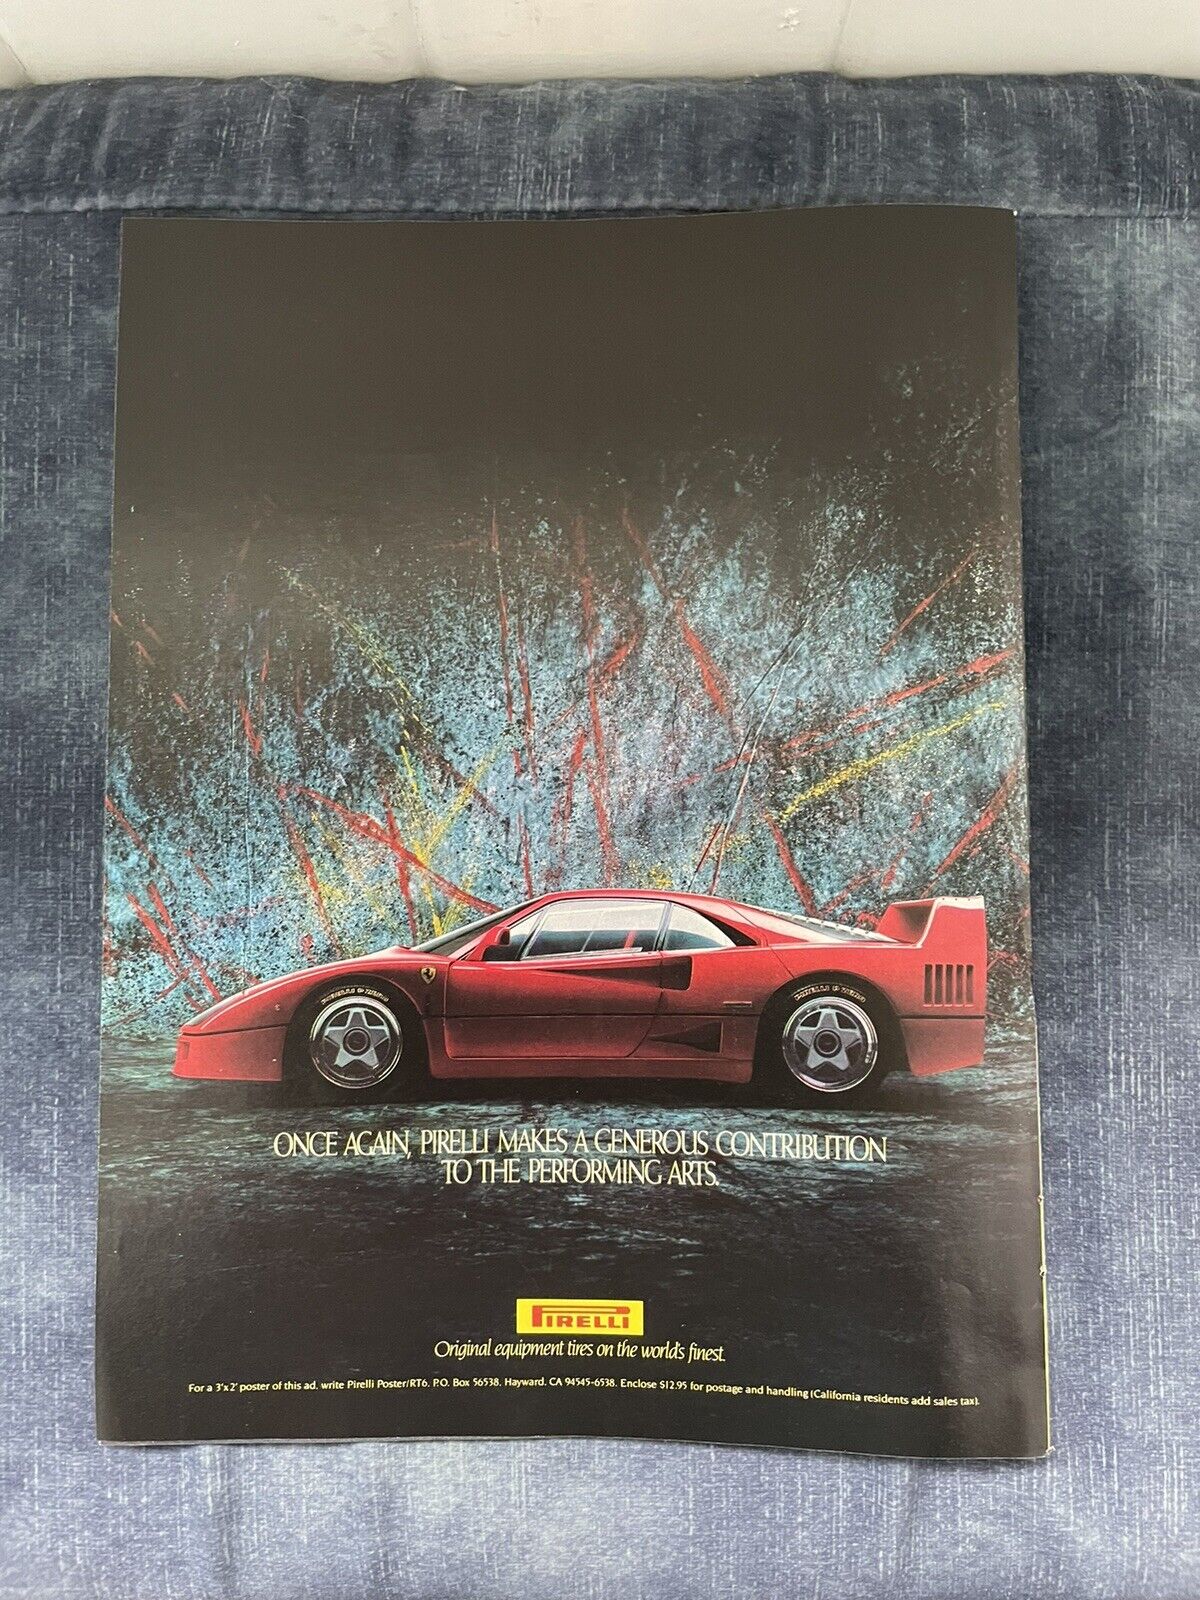 Original Ferrari F40 1988 Pirelli vintage Print Ad advertising Automobilia